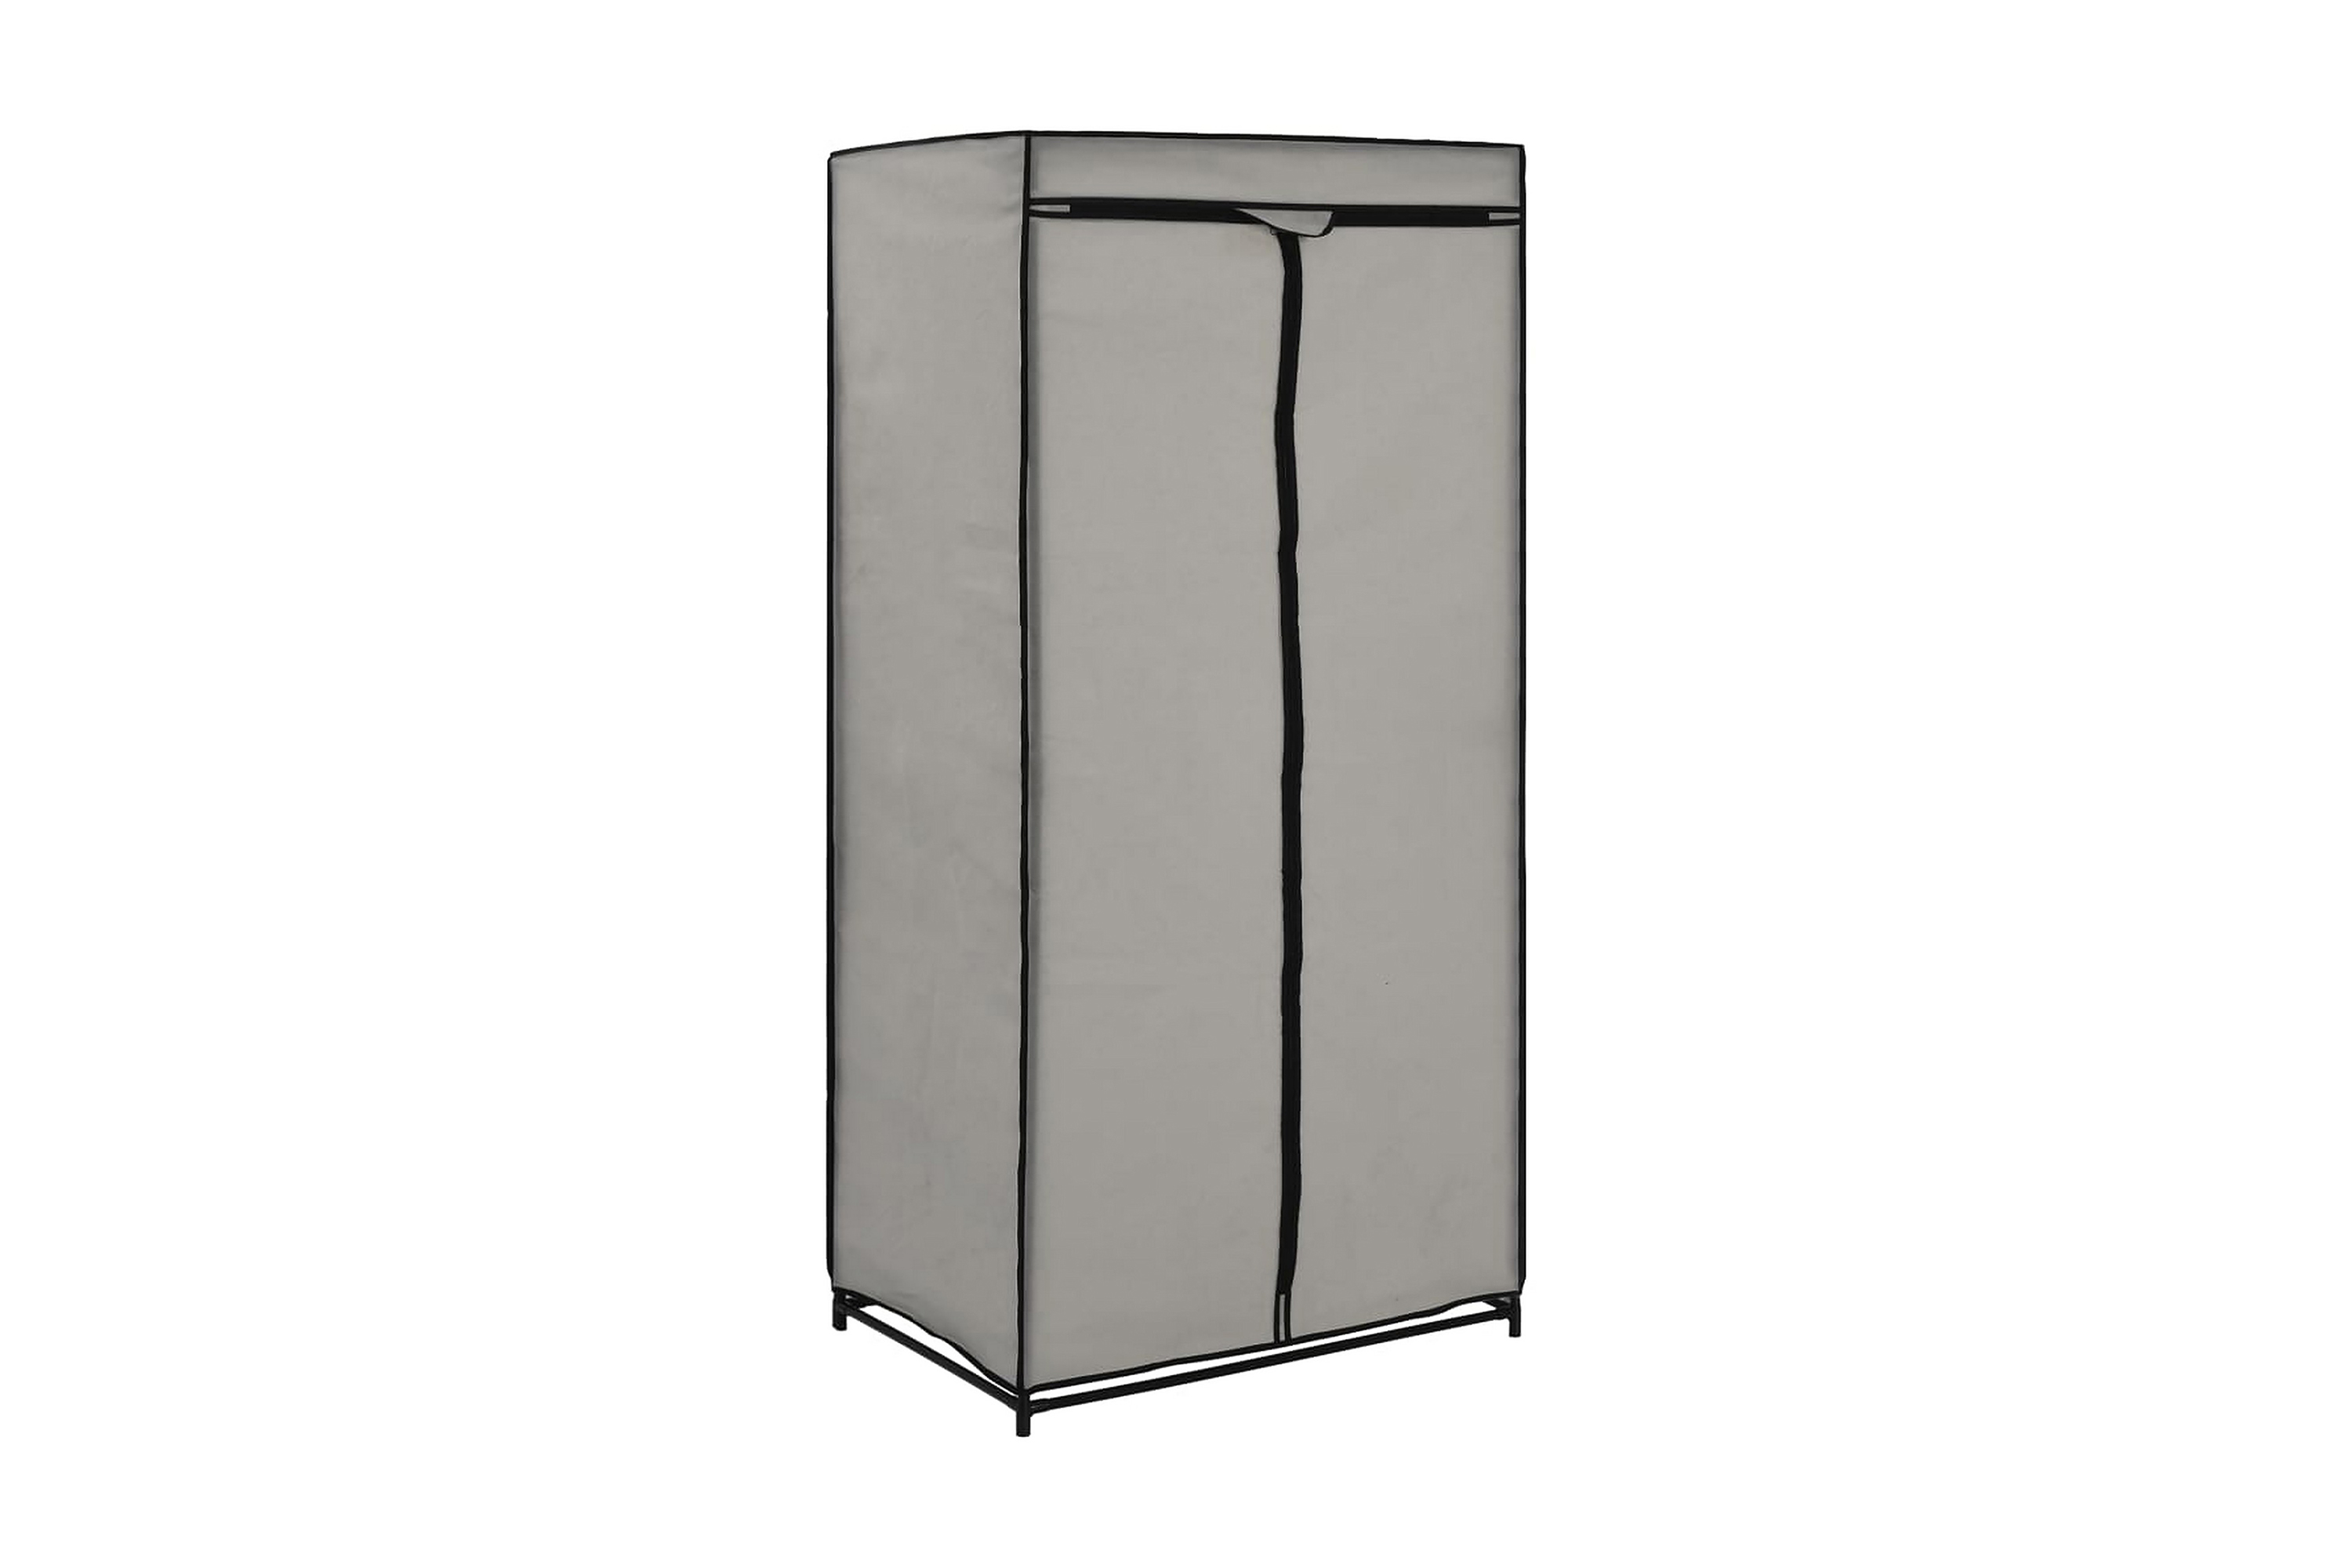 Garderob grå 75x50x160 cm - Grå